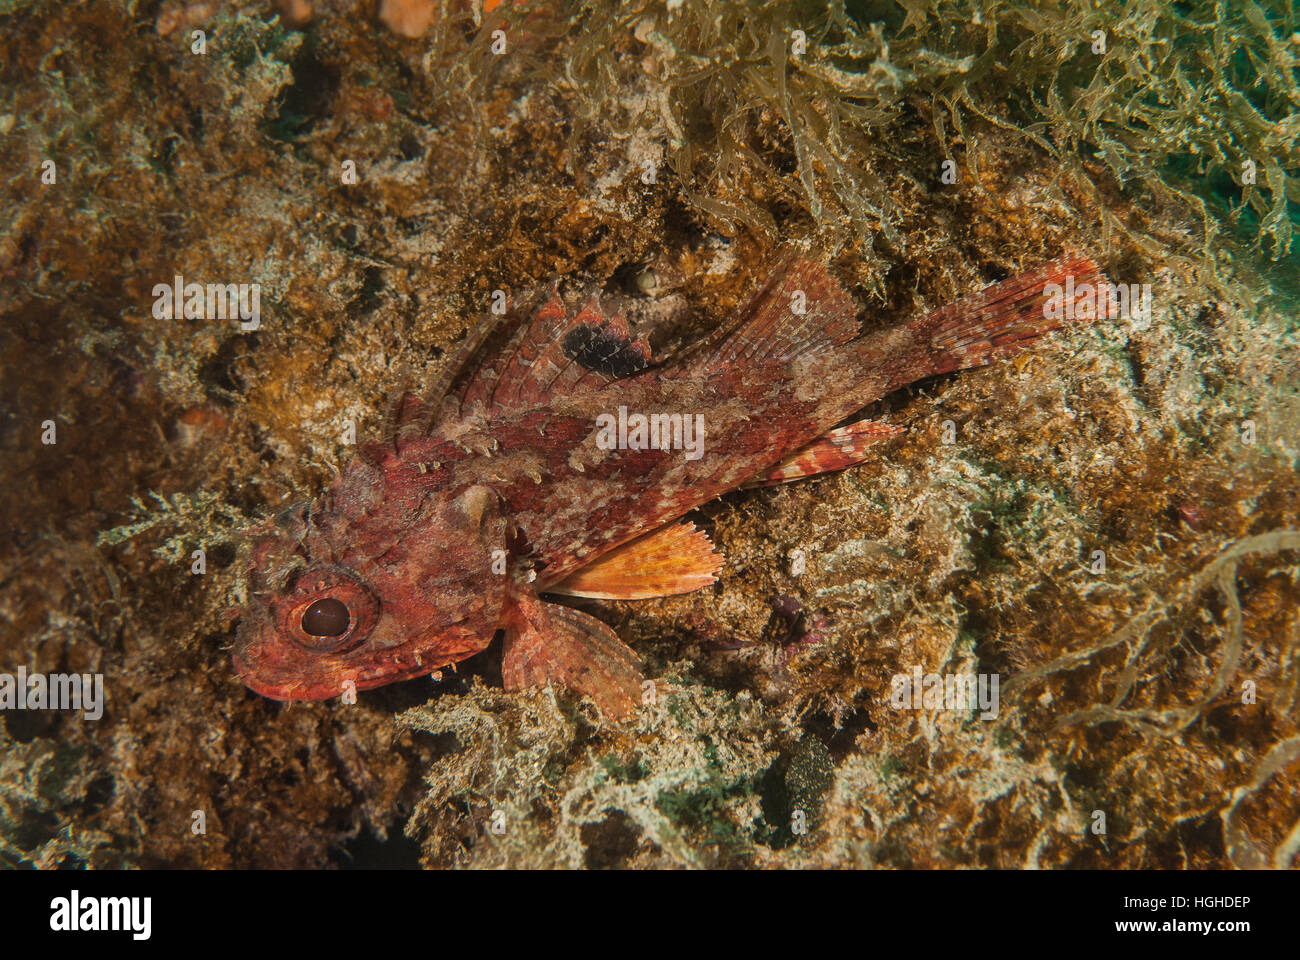 Piccoli scorfani rossi (Scorpaena notata), Scorpenidae, Tor Paterno area marina protetta, Lazio, l'Italia, Mare Mediterraneo. Foto Stock